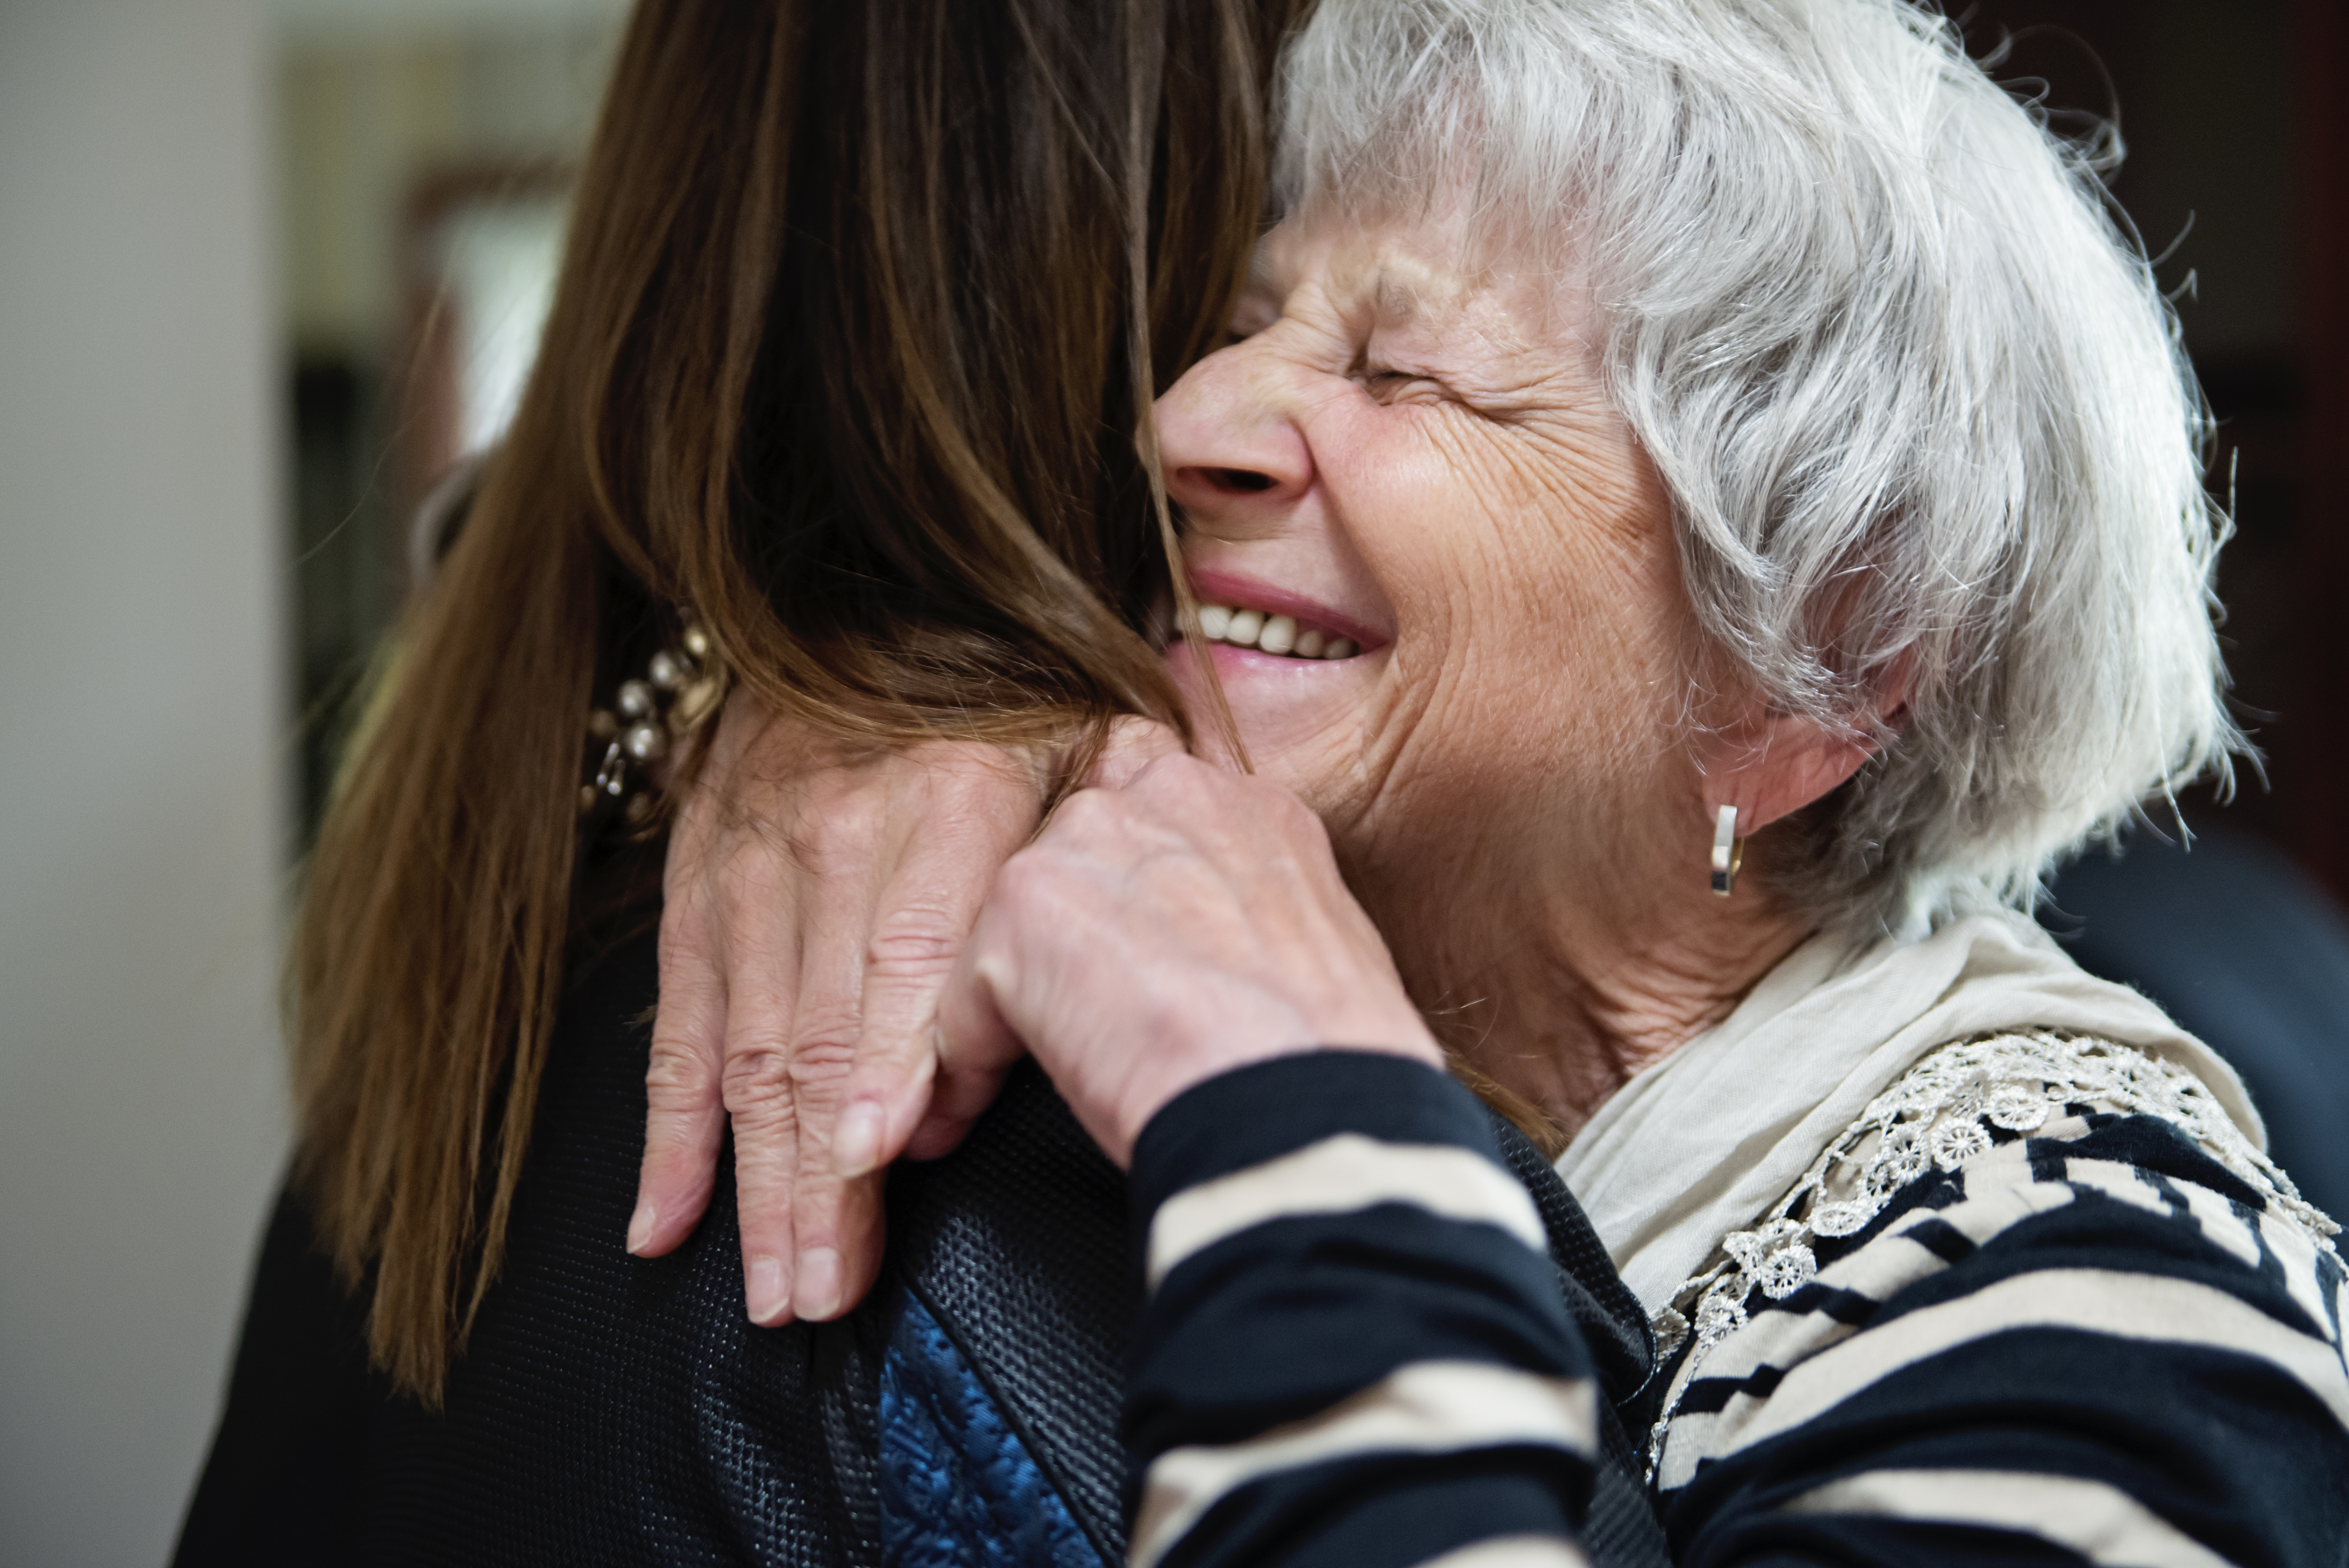 Ältere Großmutter und erwachsene Enkeltochter umarmen sich | Quelle: Getty Images